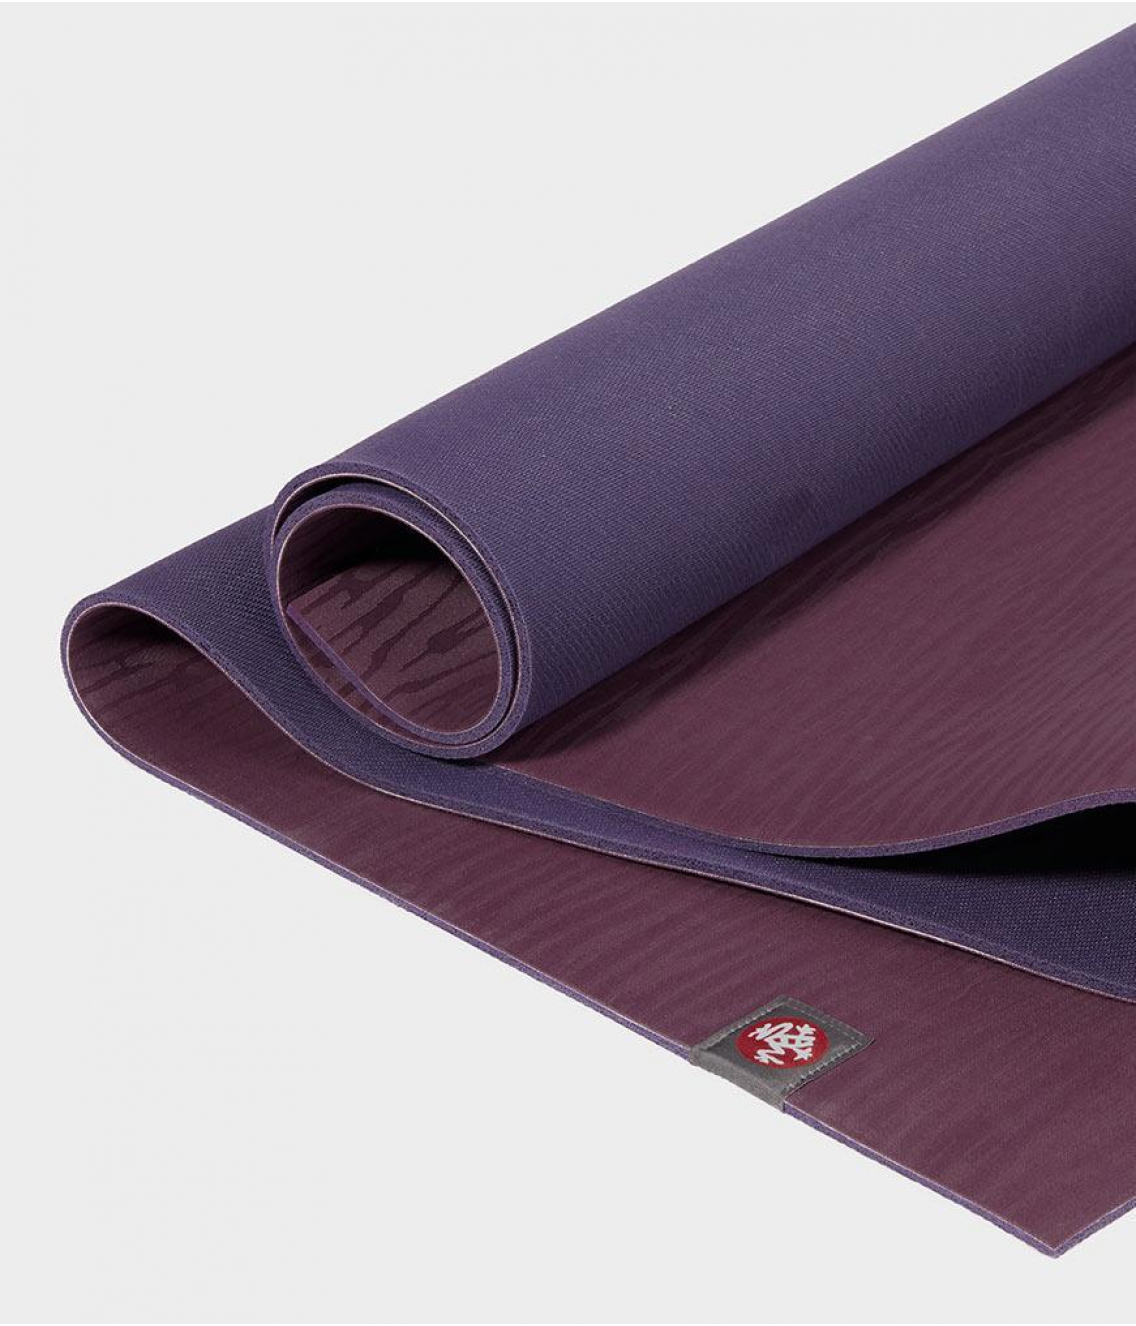 Профессиональный каучуковый коврик для йоги Manduka eKO 206*61*0,6 см - Acai Midnight (Limited Edition)